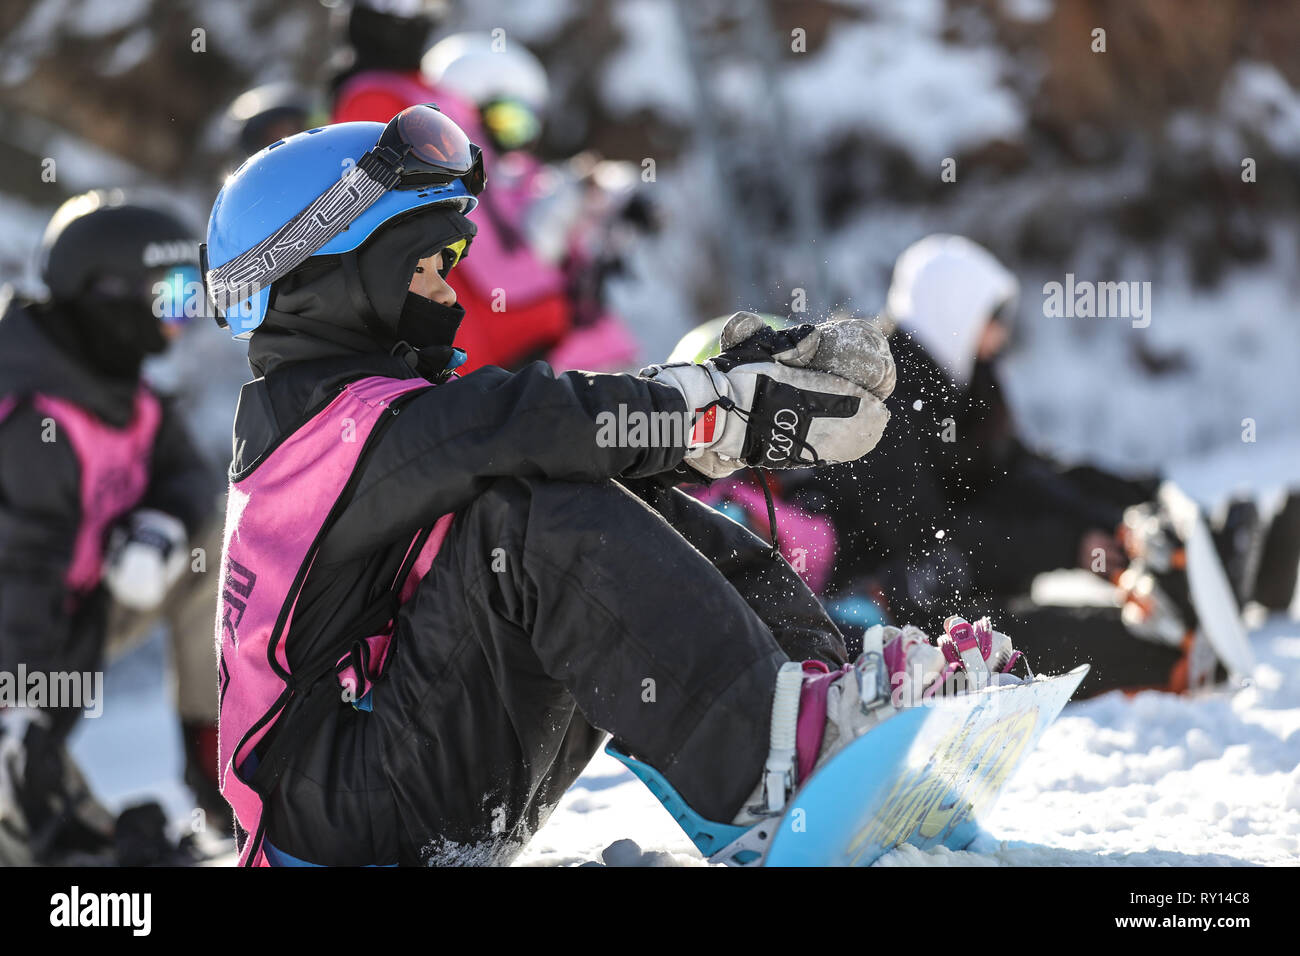 (190311) - SHENYANG, März 11, 2019 (Xinhua) - Zhou Xiaoyu bereitet sich auf sein Training im Ausgangspunkt einer Halfpipe in Shenyang Sport Universität, in Shenyang im Nordosten der chinesischen Provinz Liaoning, am 23.01.2019. Es gibt rund 30 Kinder von 8 bis 16 Jahren studieren snowboard Halfpipe in Shenyang Sport Universität. Einige von ihnen wollen, professionelle Athleten zu werden, und einige von ihnen einfach nur einen Eindruck von diesem Sport zu haben. In Peking 2022 winter spiele in der Nähe von Drew, mehr und mehr Menschen in China, darunter junge Studenten, begann zu lernen und in Eis und Schnee teilnehmen Stockfoto